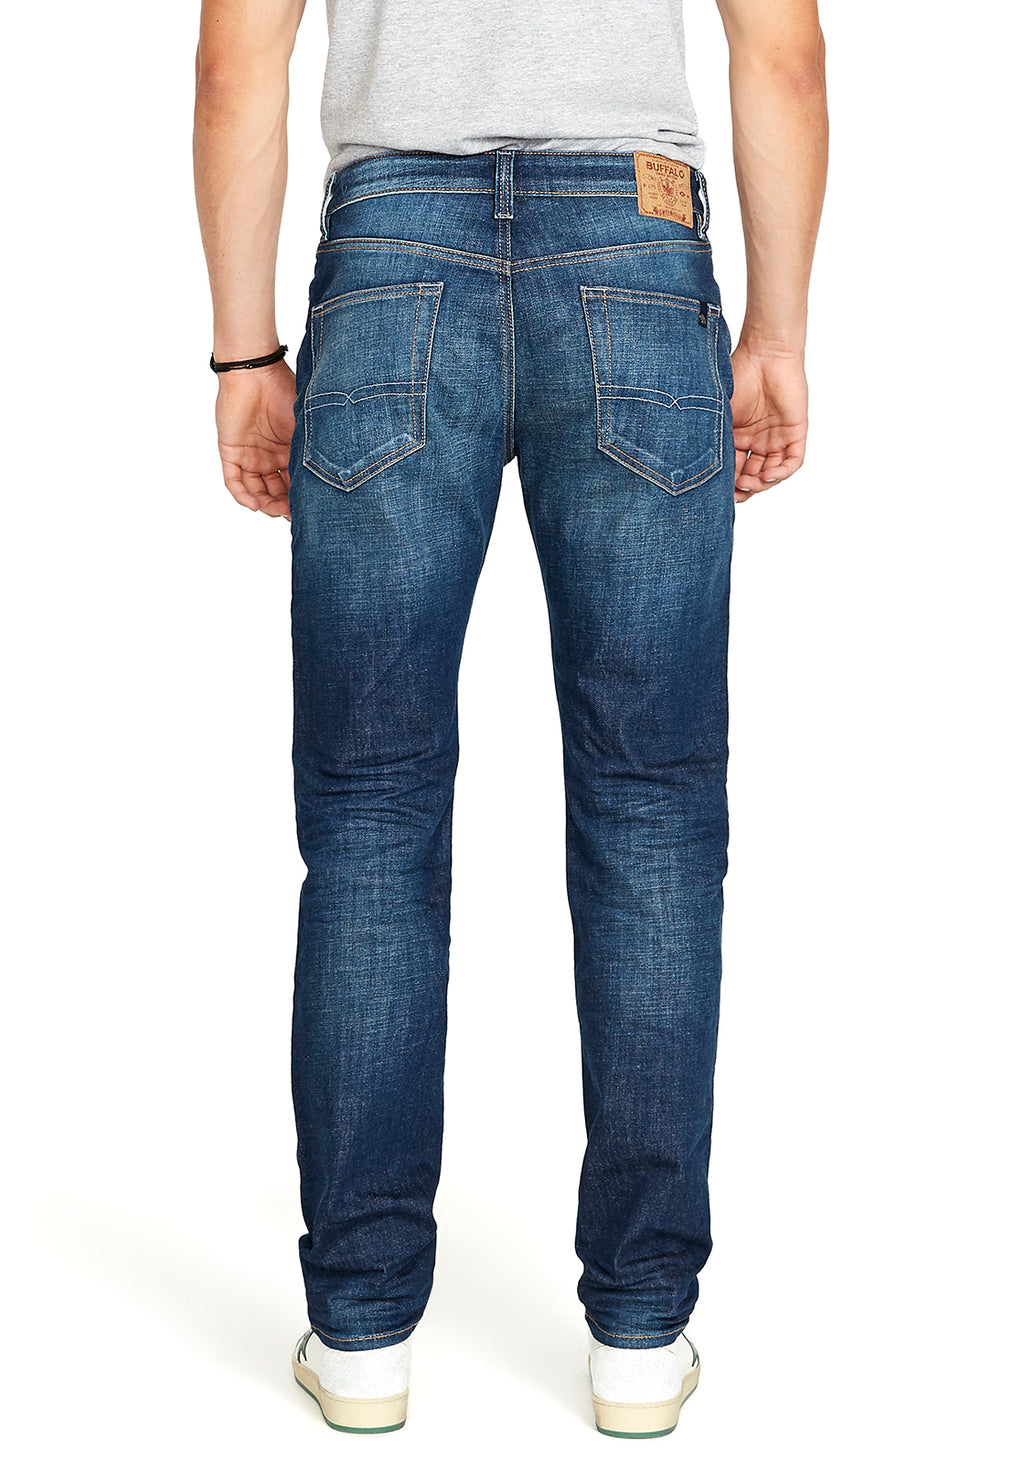 Fleece Jeans – Buffalo Jeans - US